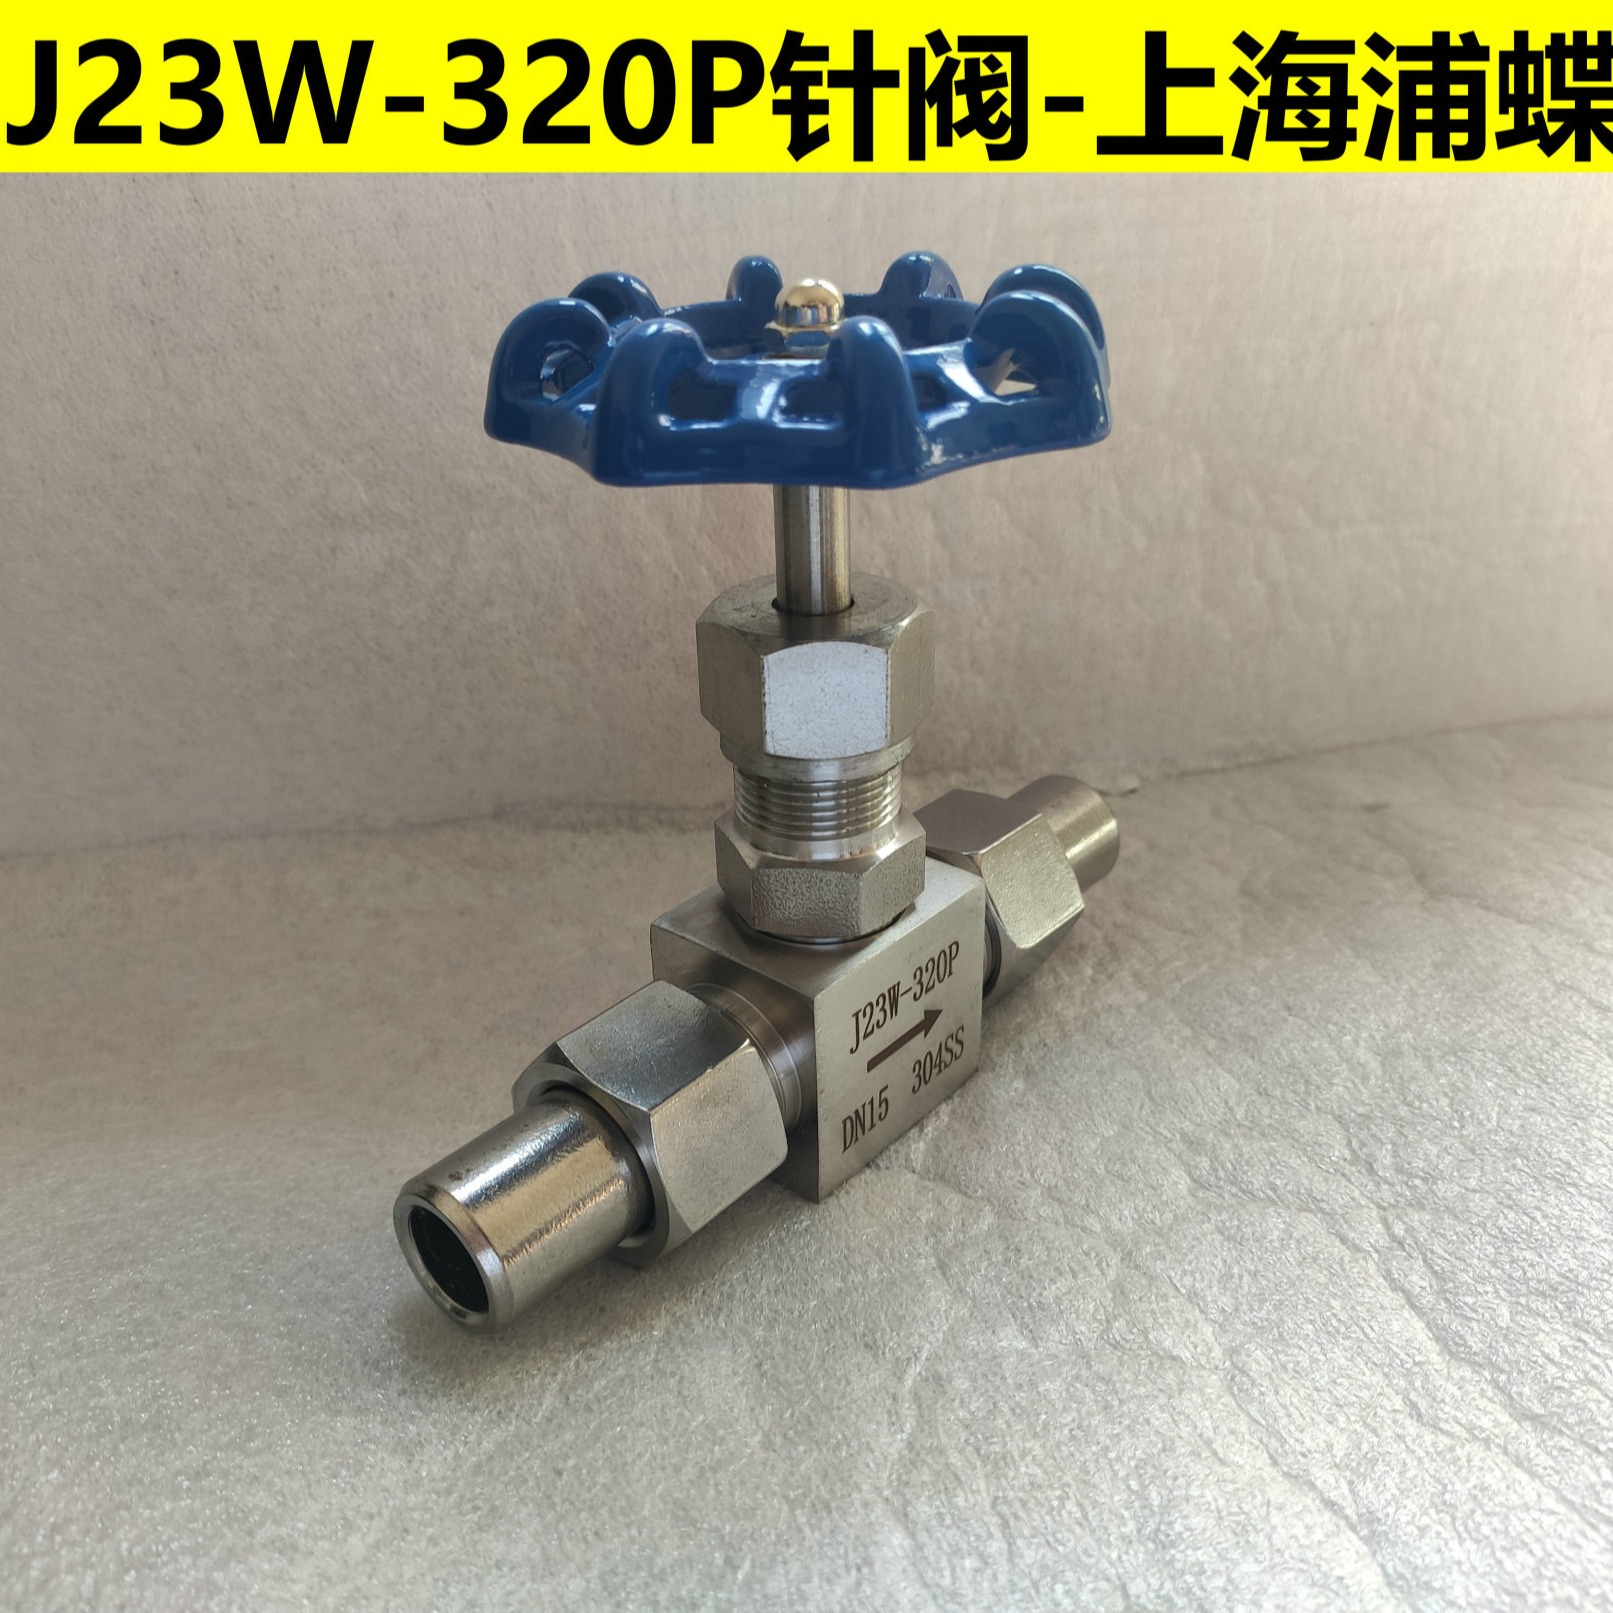 J23W-320P不锈钢针型阀 上海浦蝶品牌图片